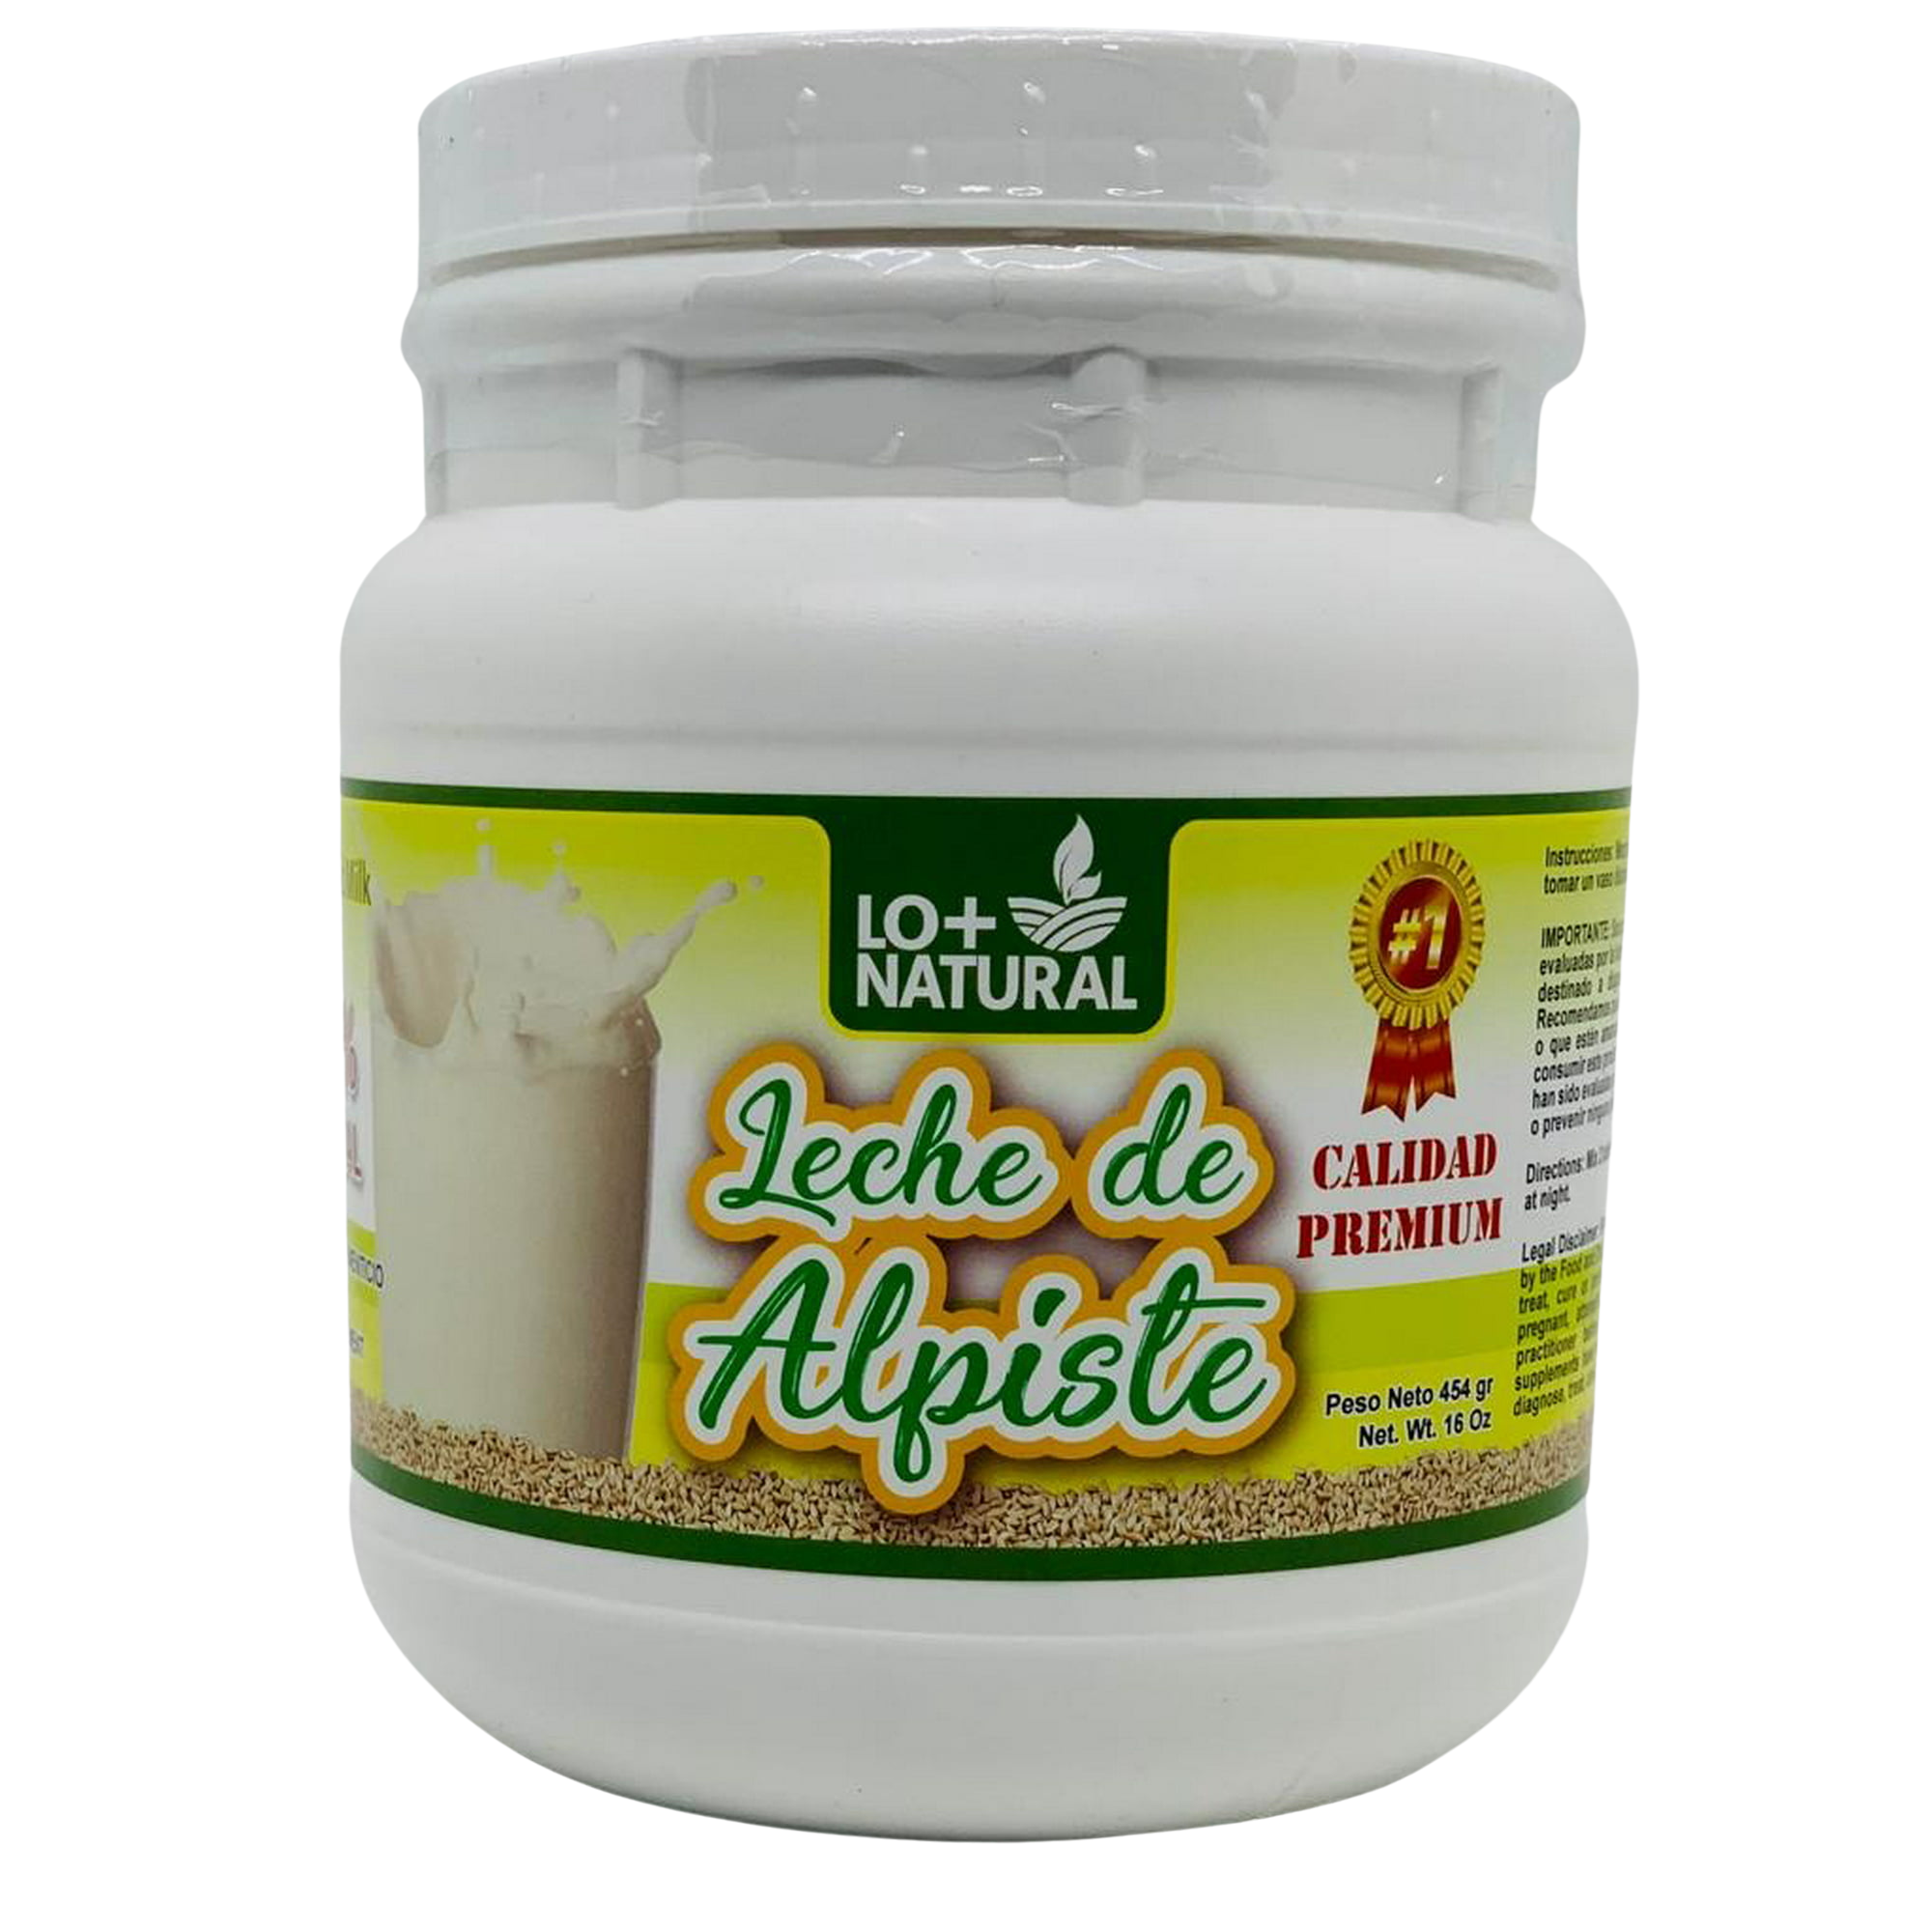 Leche de Alpiste (454g) Canary Seed Milk / 100% Natural Suplemento Alimenticio LO+NATURAL - image 1 of 9